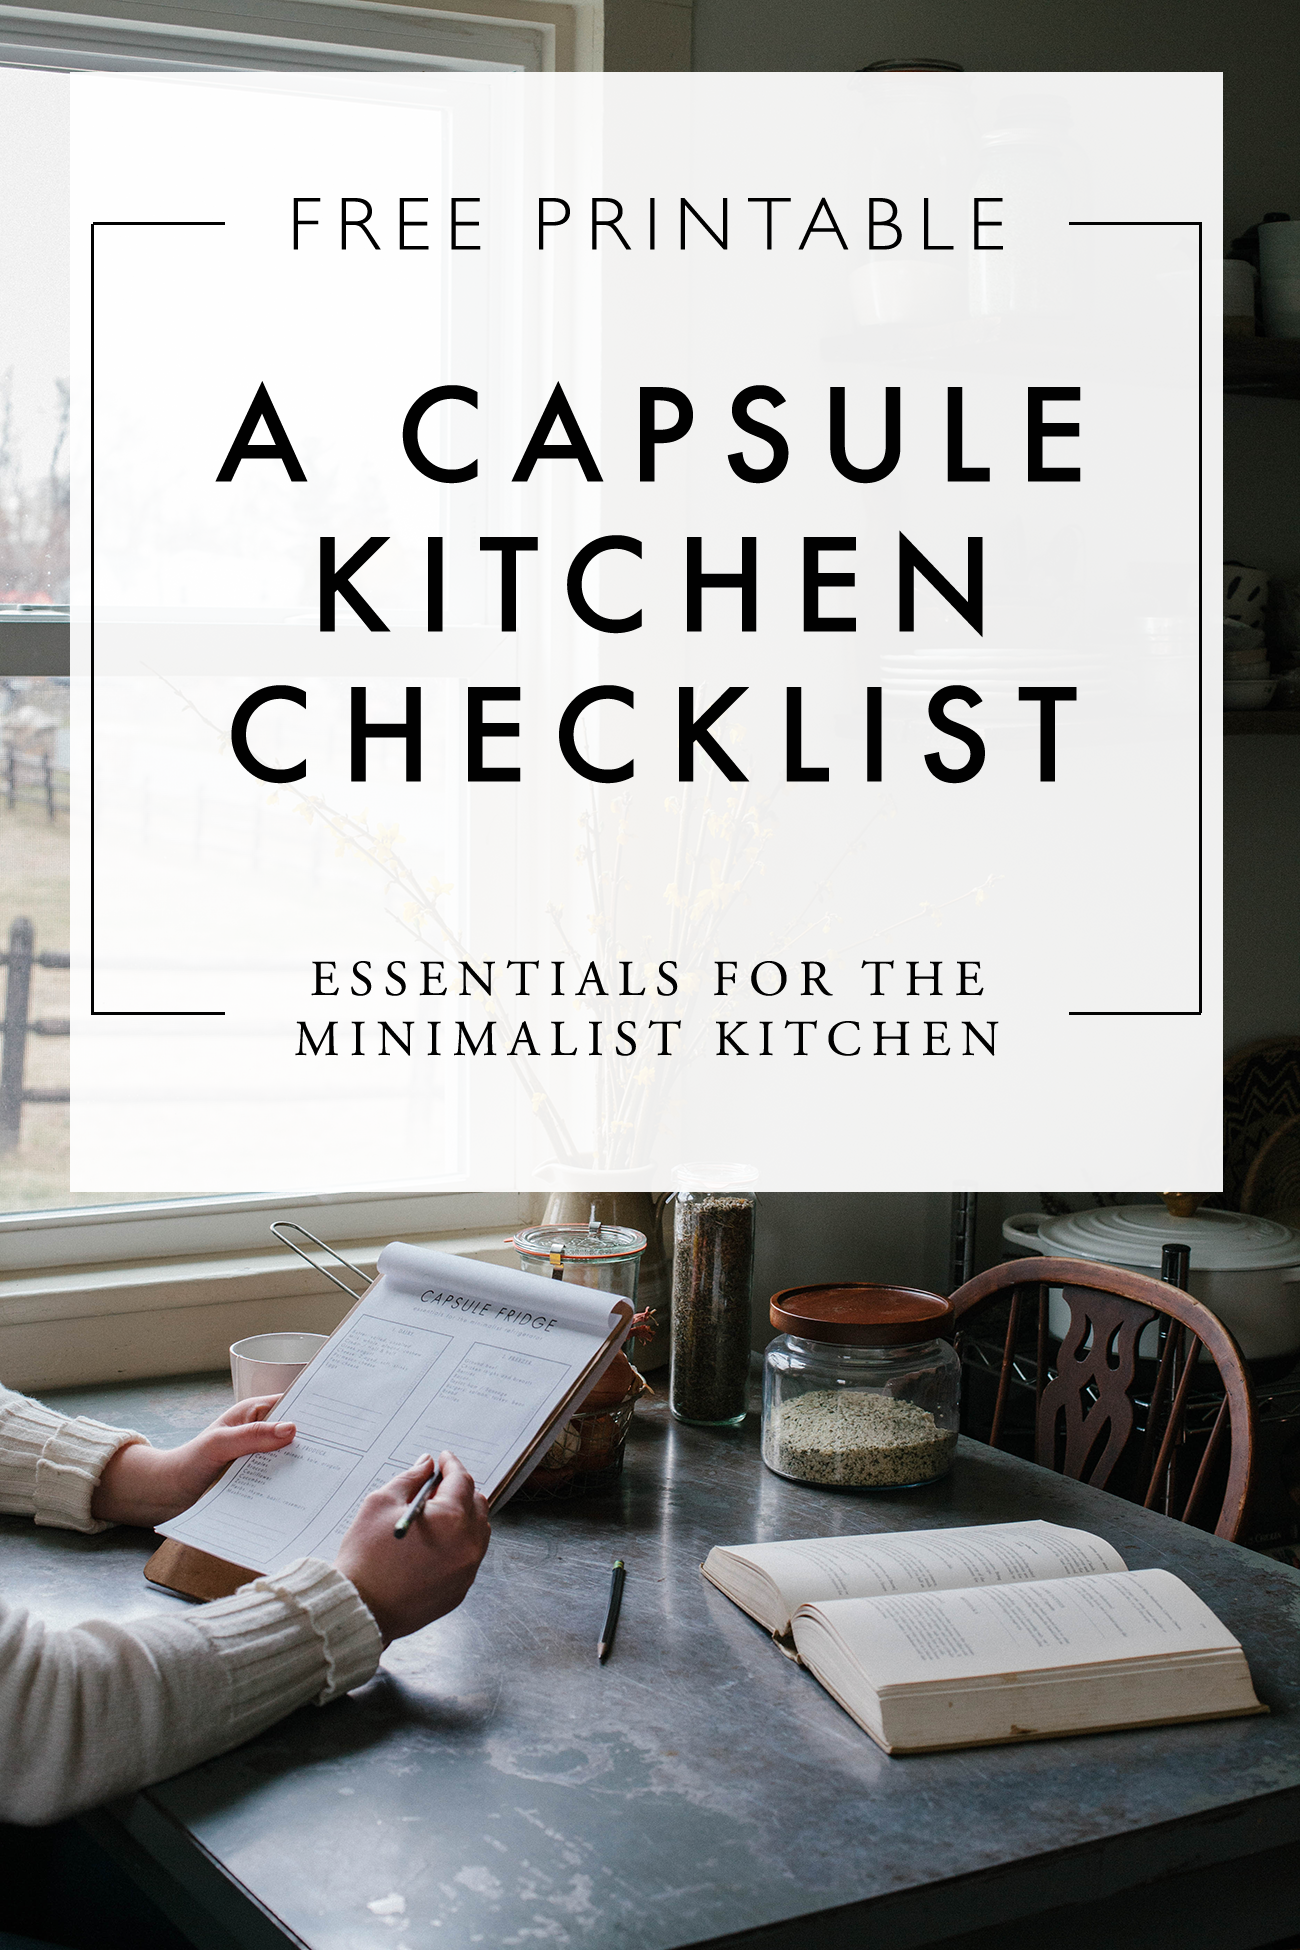 Kitchen Essentials Guide - All of My Favorite Kitchen Essentials